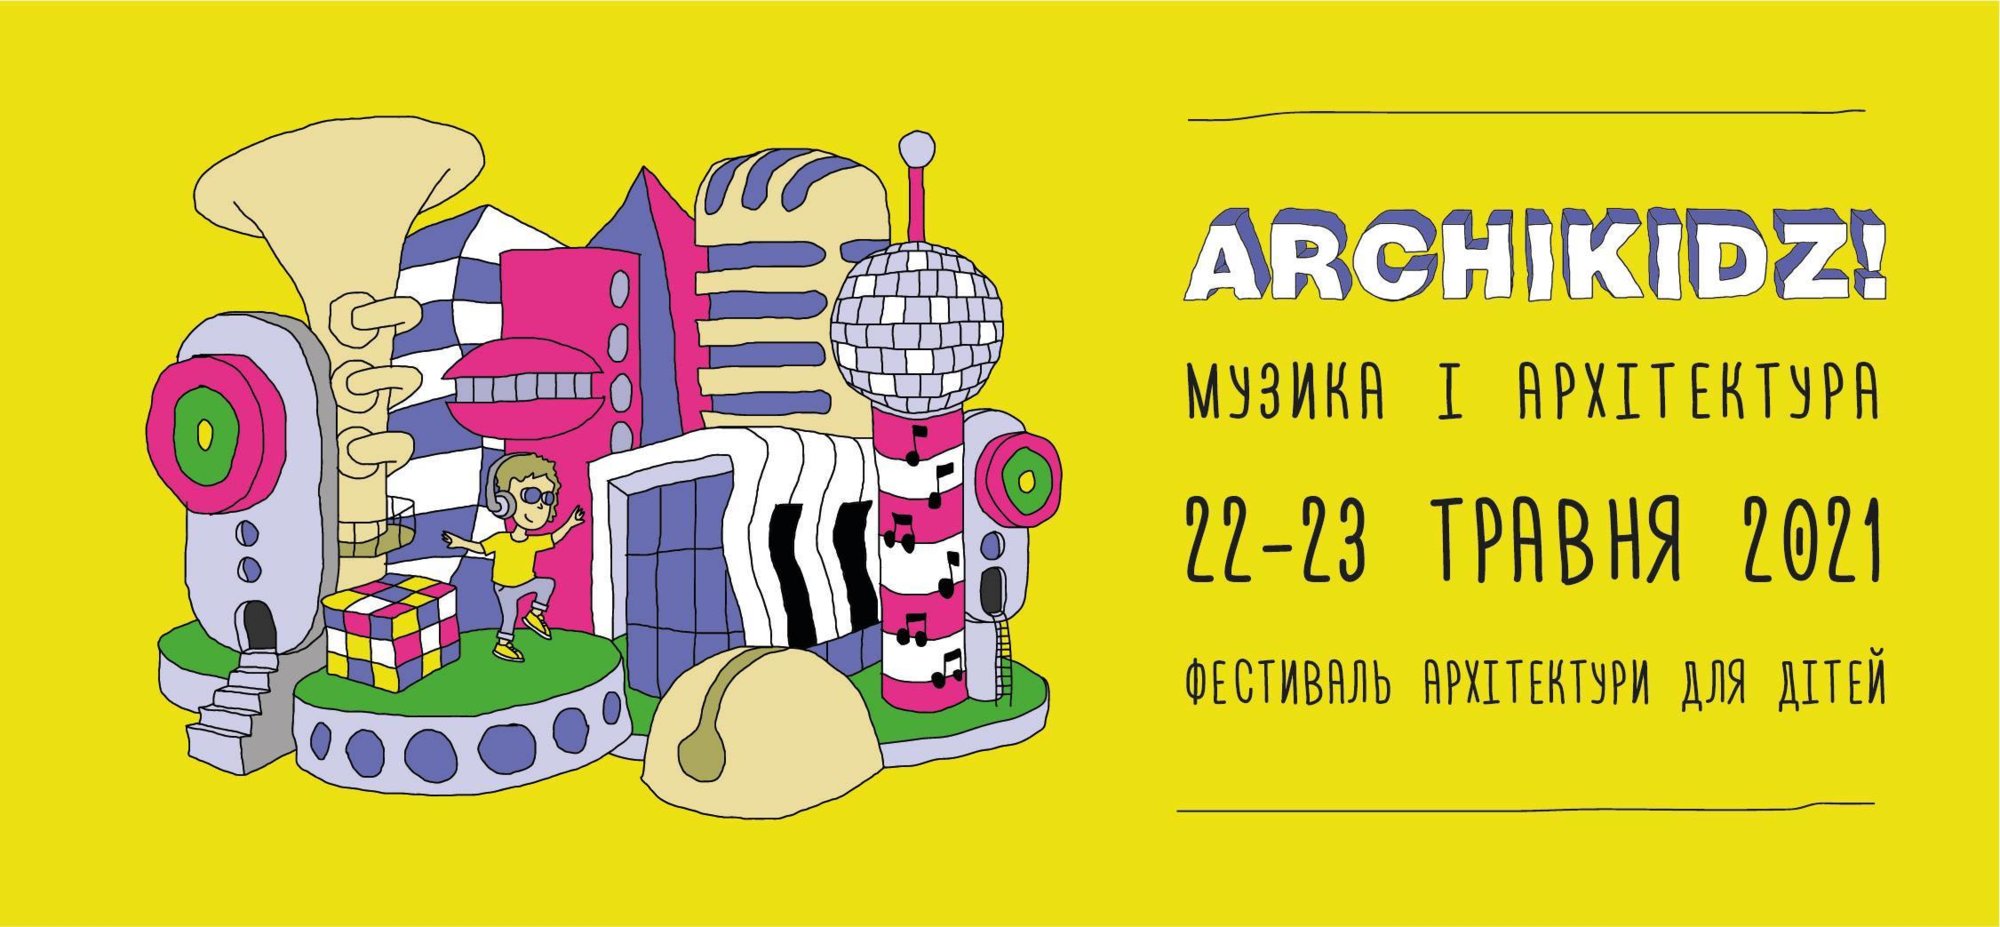 Всеукраинский фестиваль архитектуры для детей "Archikidz"